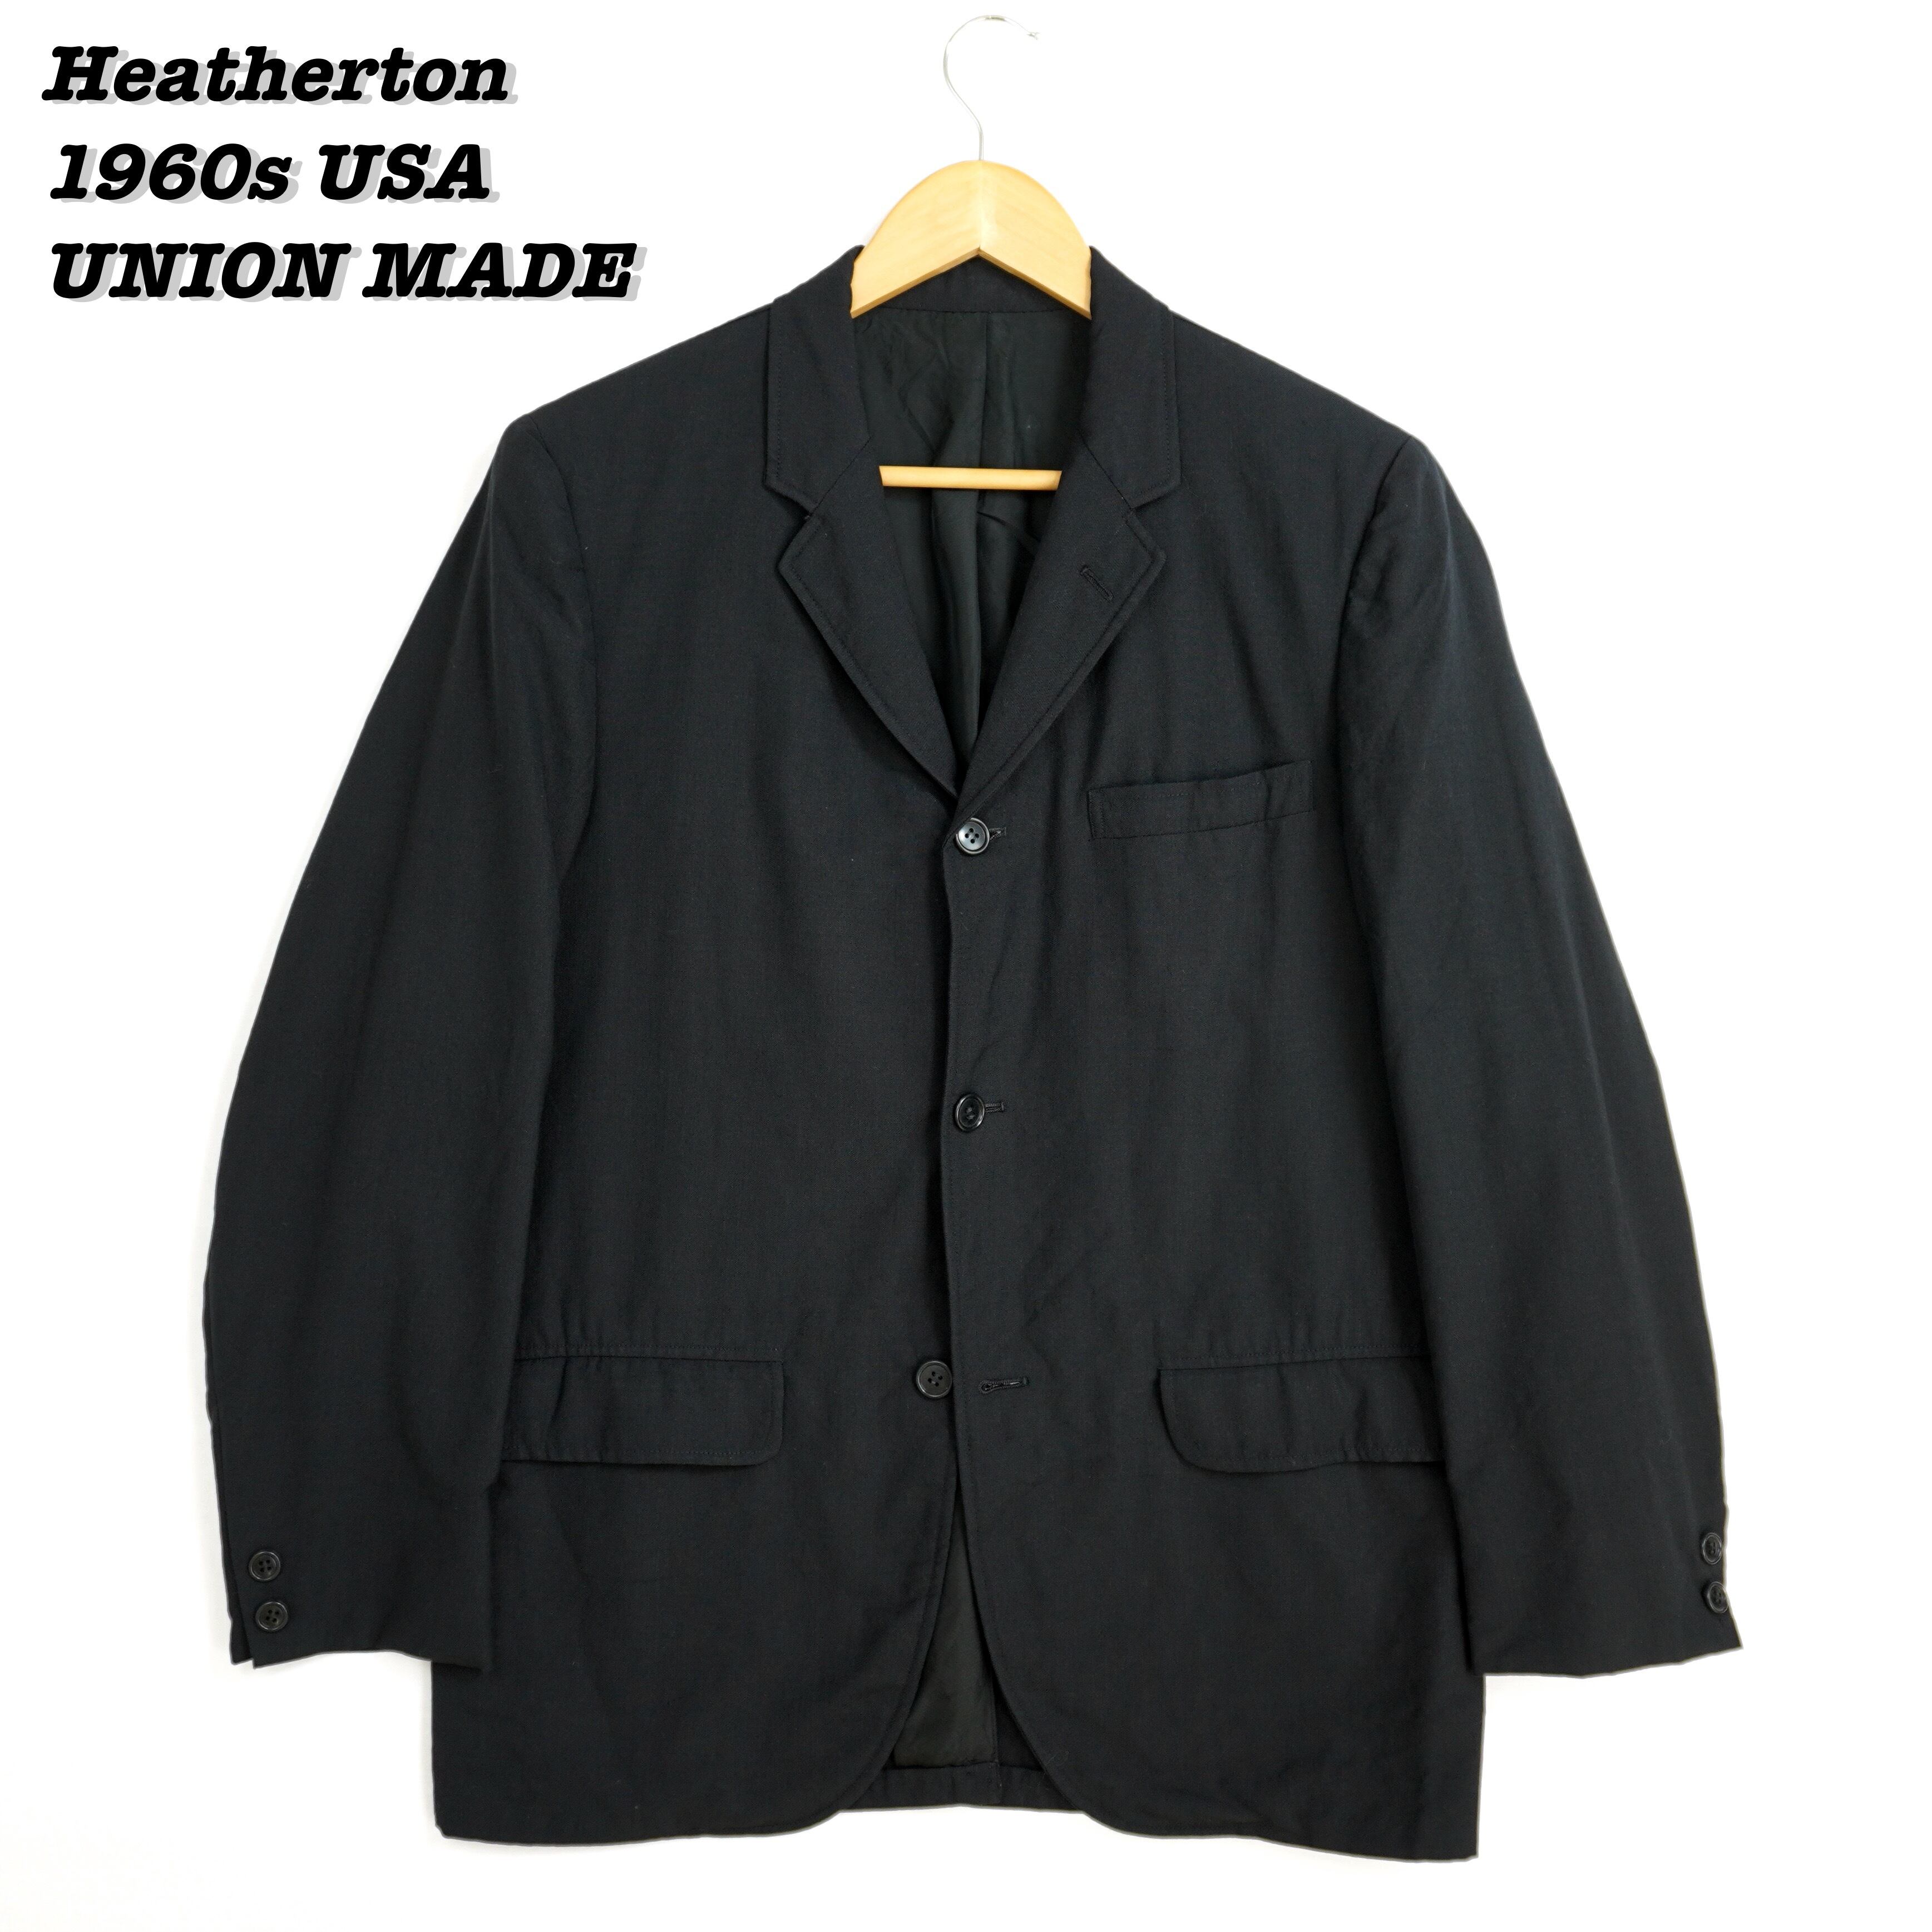 Heatherton Tailored Jacket USA 1960s